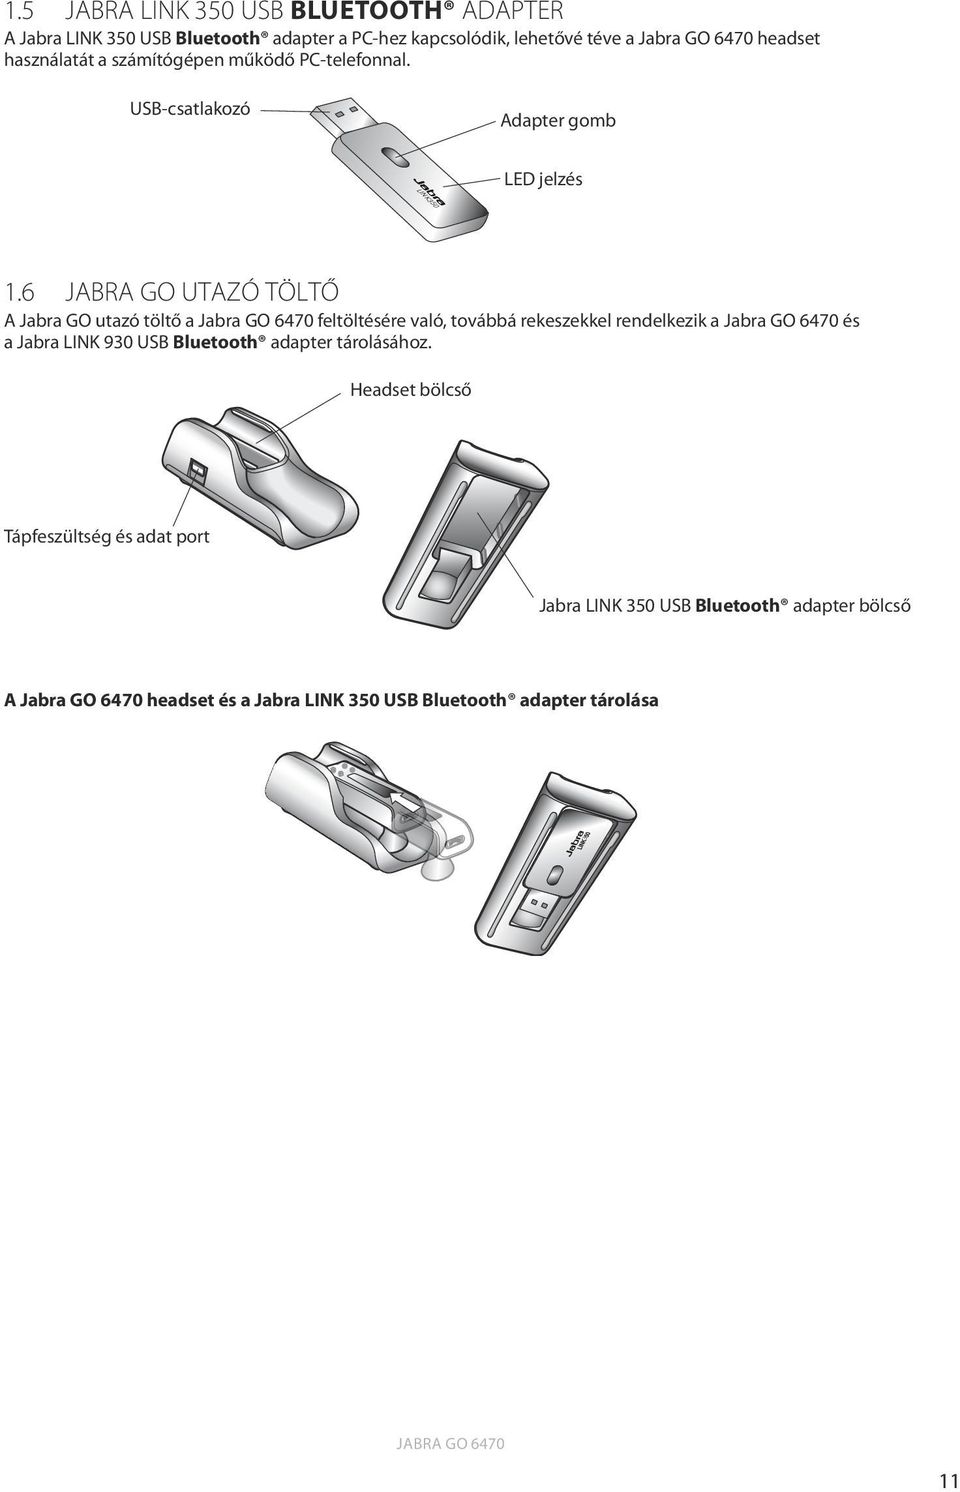 6 Jabra GO utazó töltő A Jabra GO utazó töltő a Jabra GO 6470 feltöltésére való, továbbá rekeszekkel rendelkezik a Jabra GO 6470 és a Jabra LINK